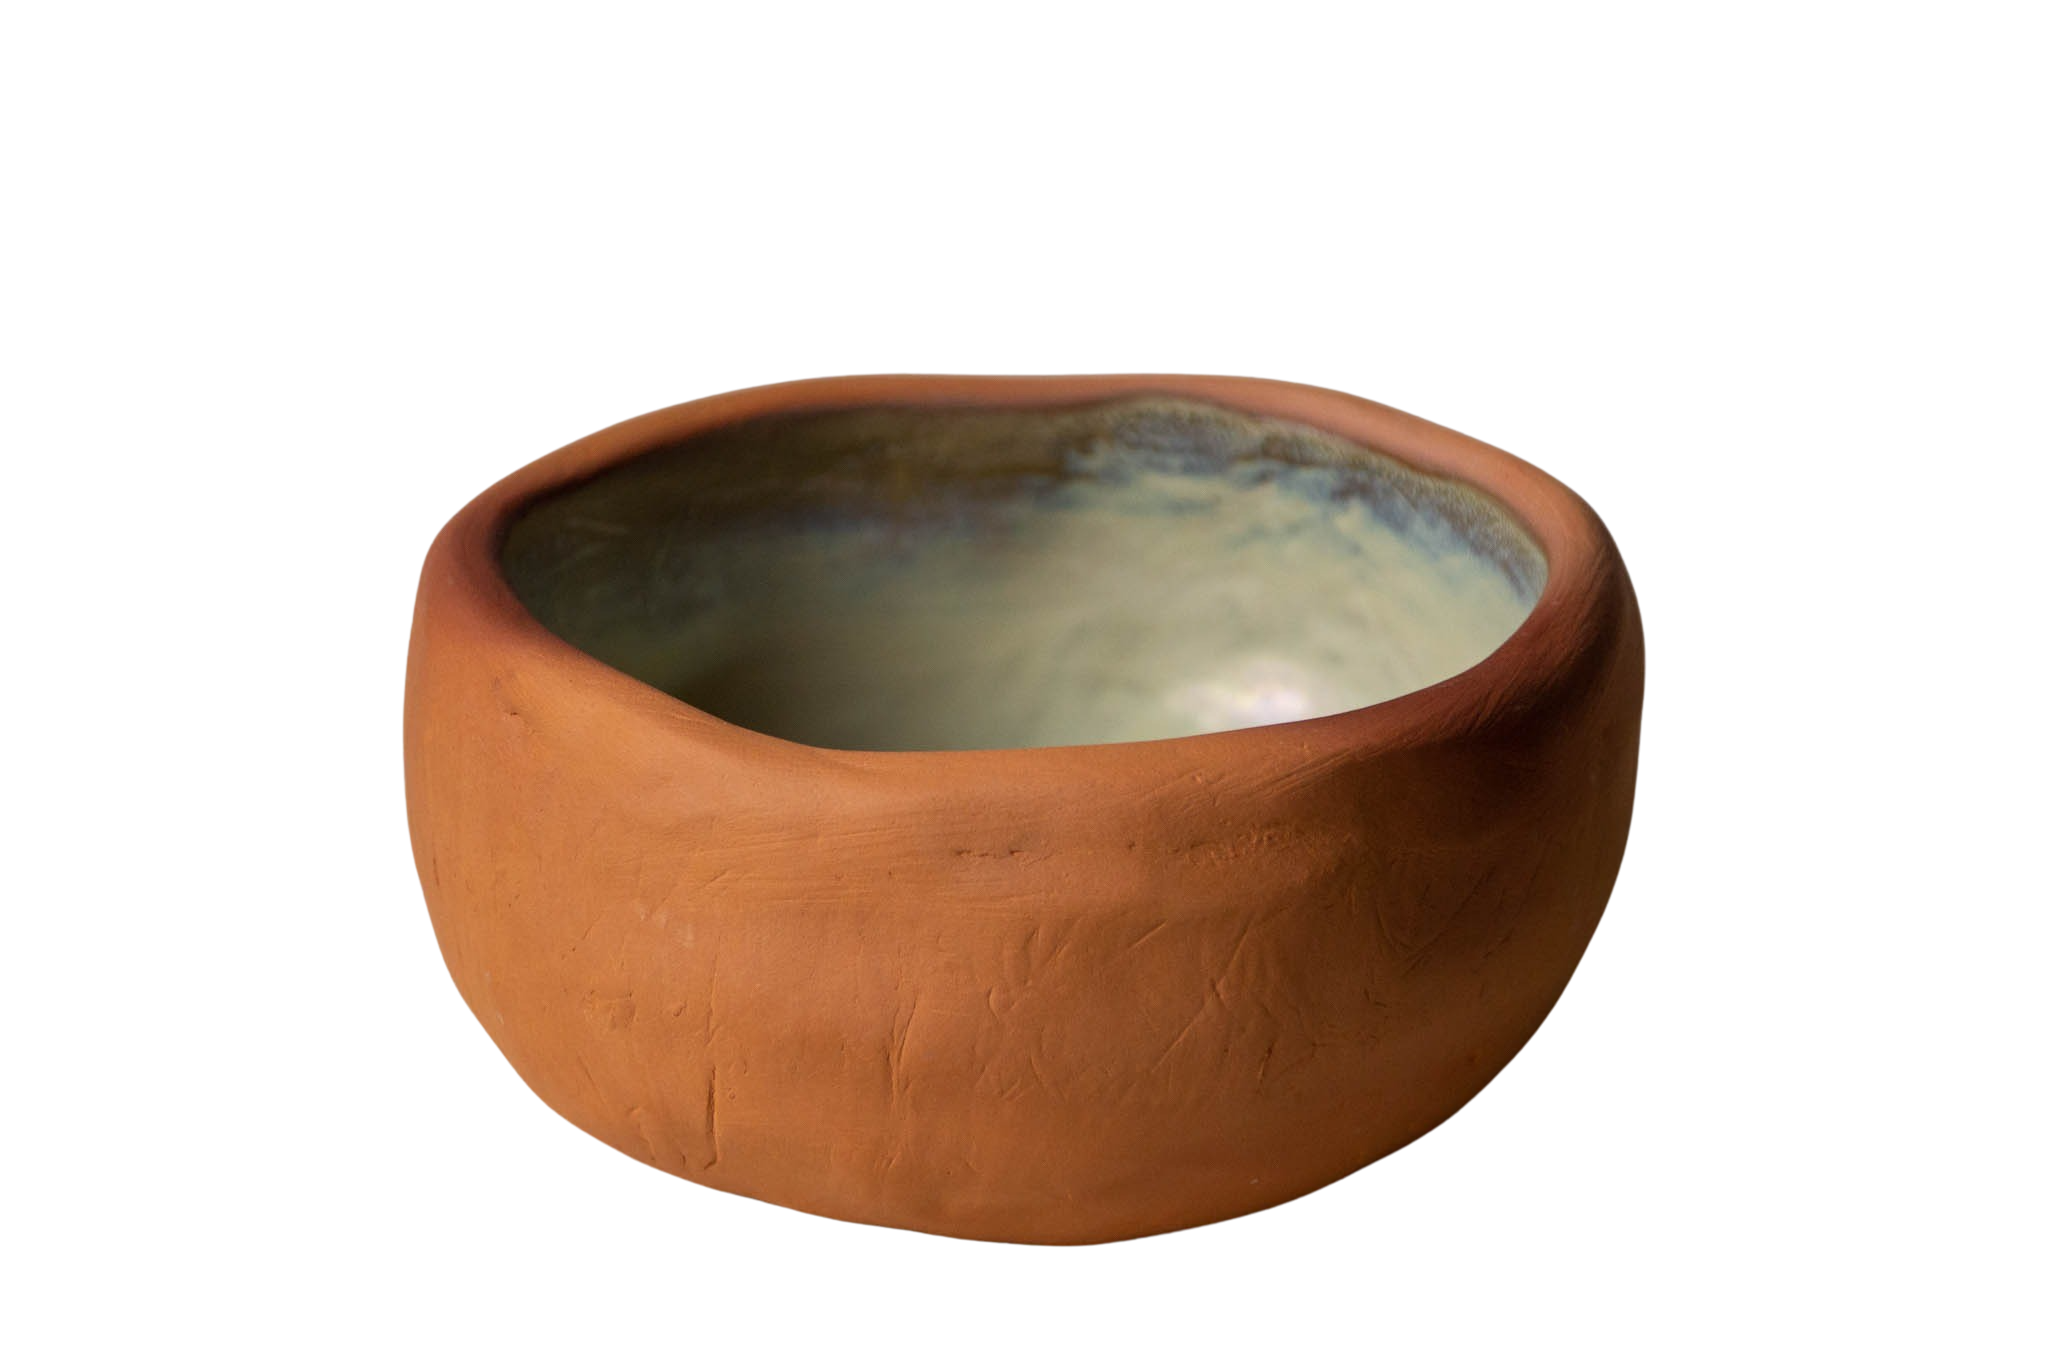  Cream ceramic bowl 